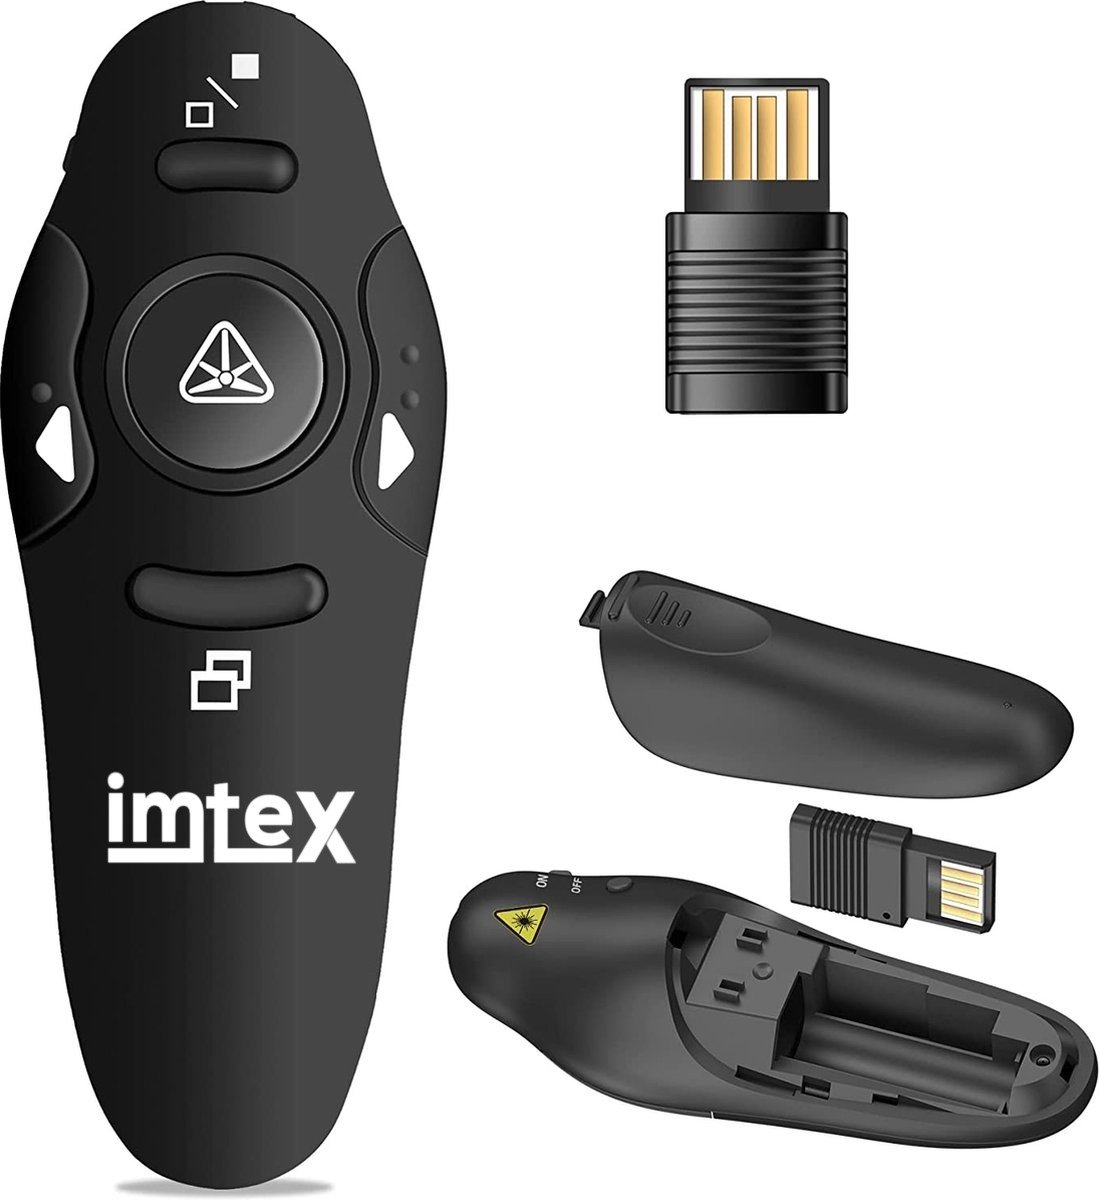 Imtex Draadloze presenter met laser pointer - Presentatie klikker - 2.4 GHz - 15m - MacOS, Windows, Android - Zwart